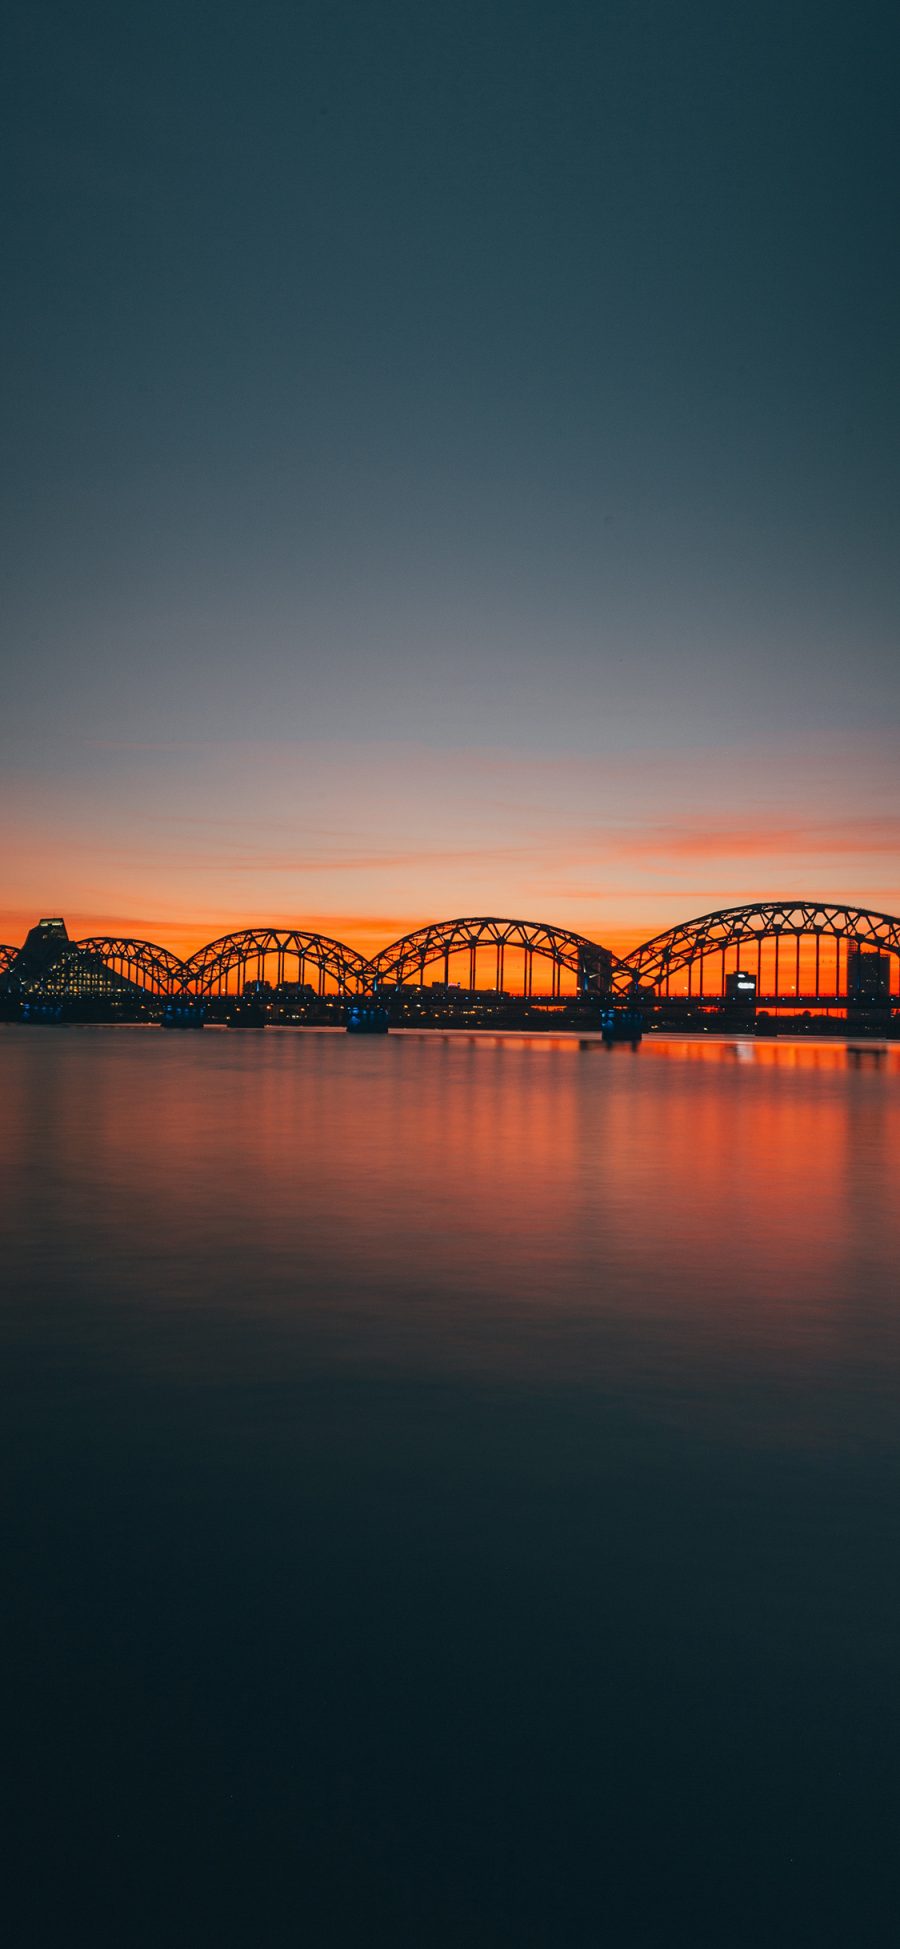 [2436×1125]夕阳 黄昏 桥梁 海平面 苹果手机壁纸图片